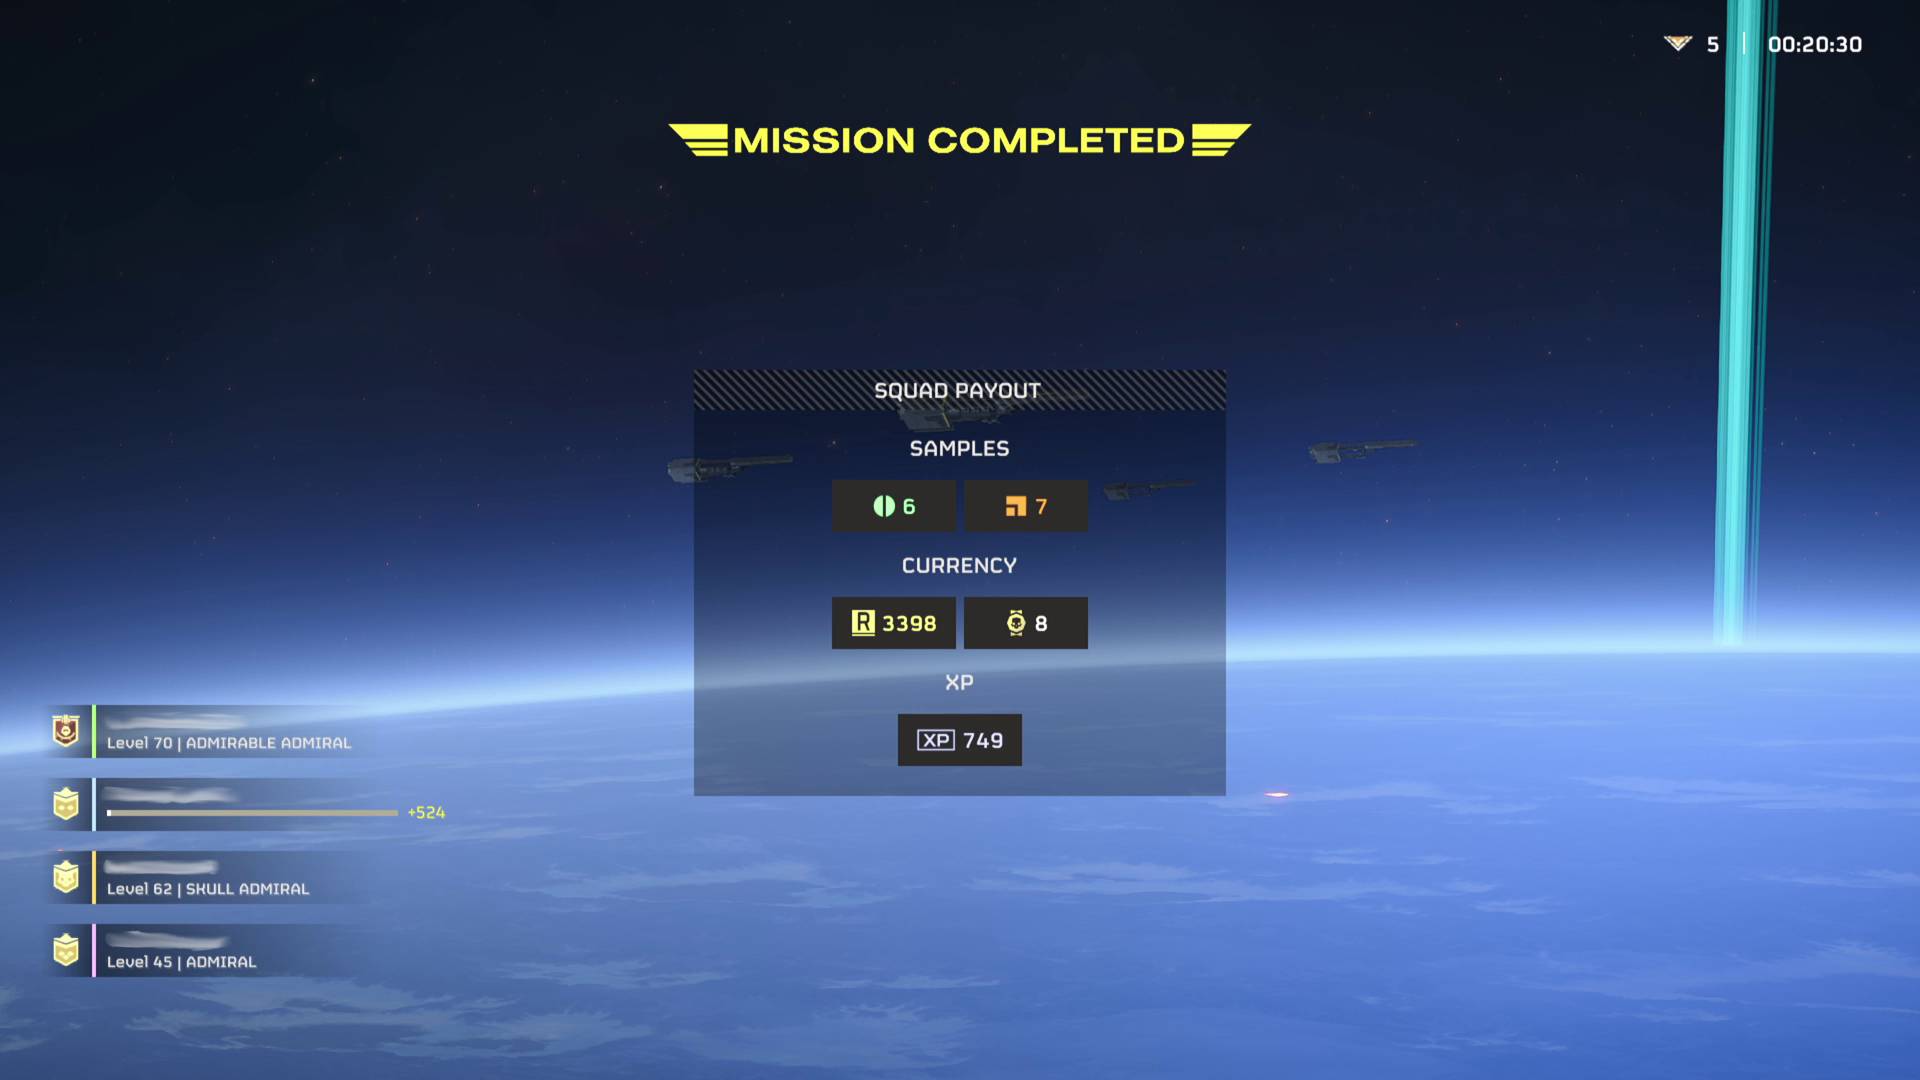 Mostre rare extrase din Helldivers 2 pe ecranul de finalizare a misiunii